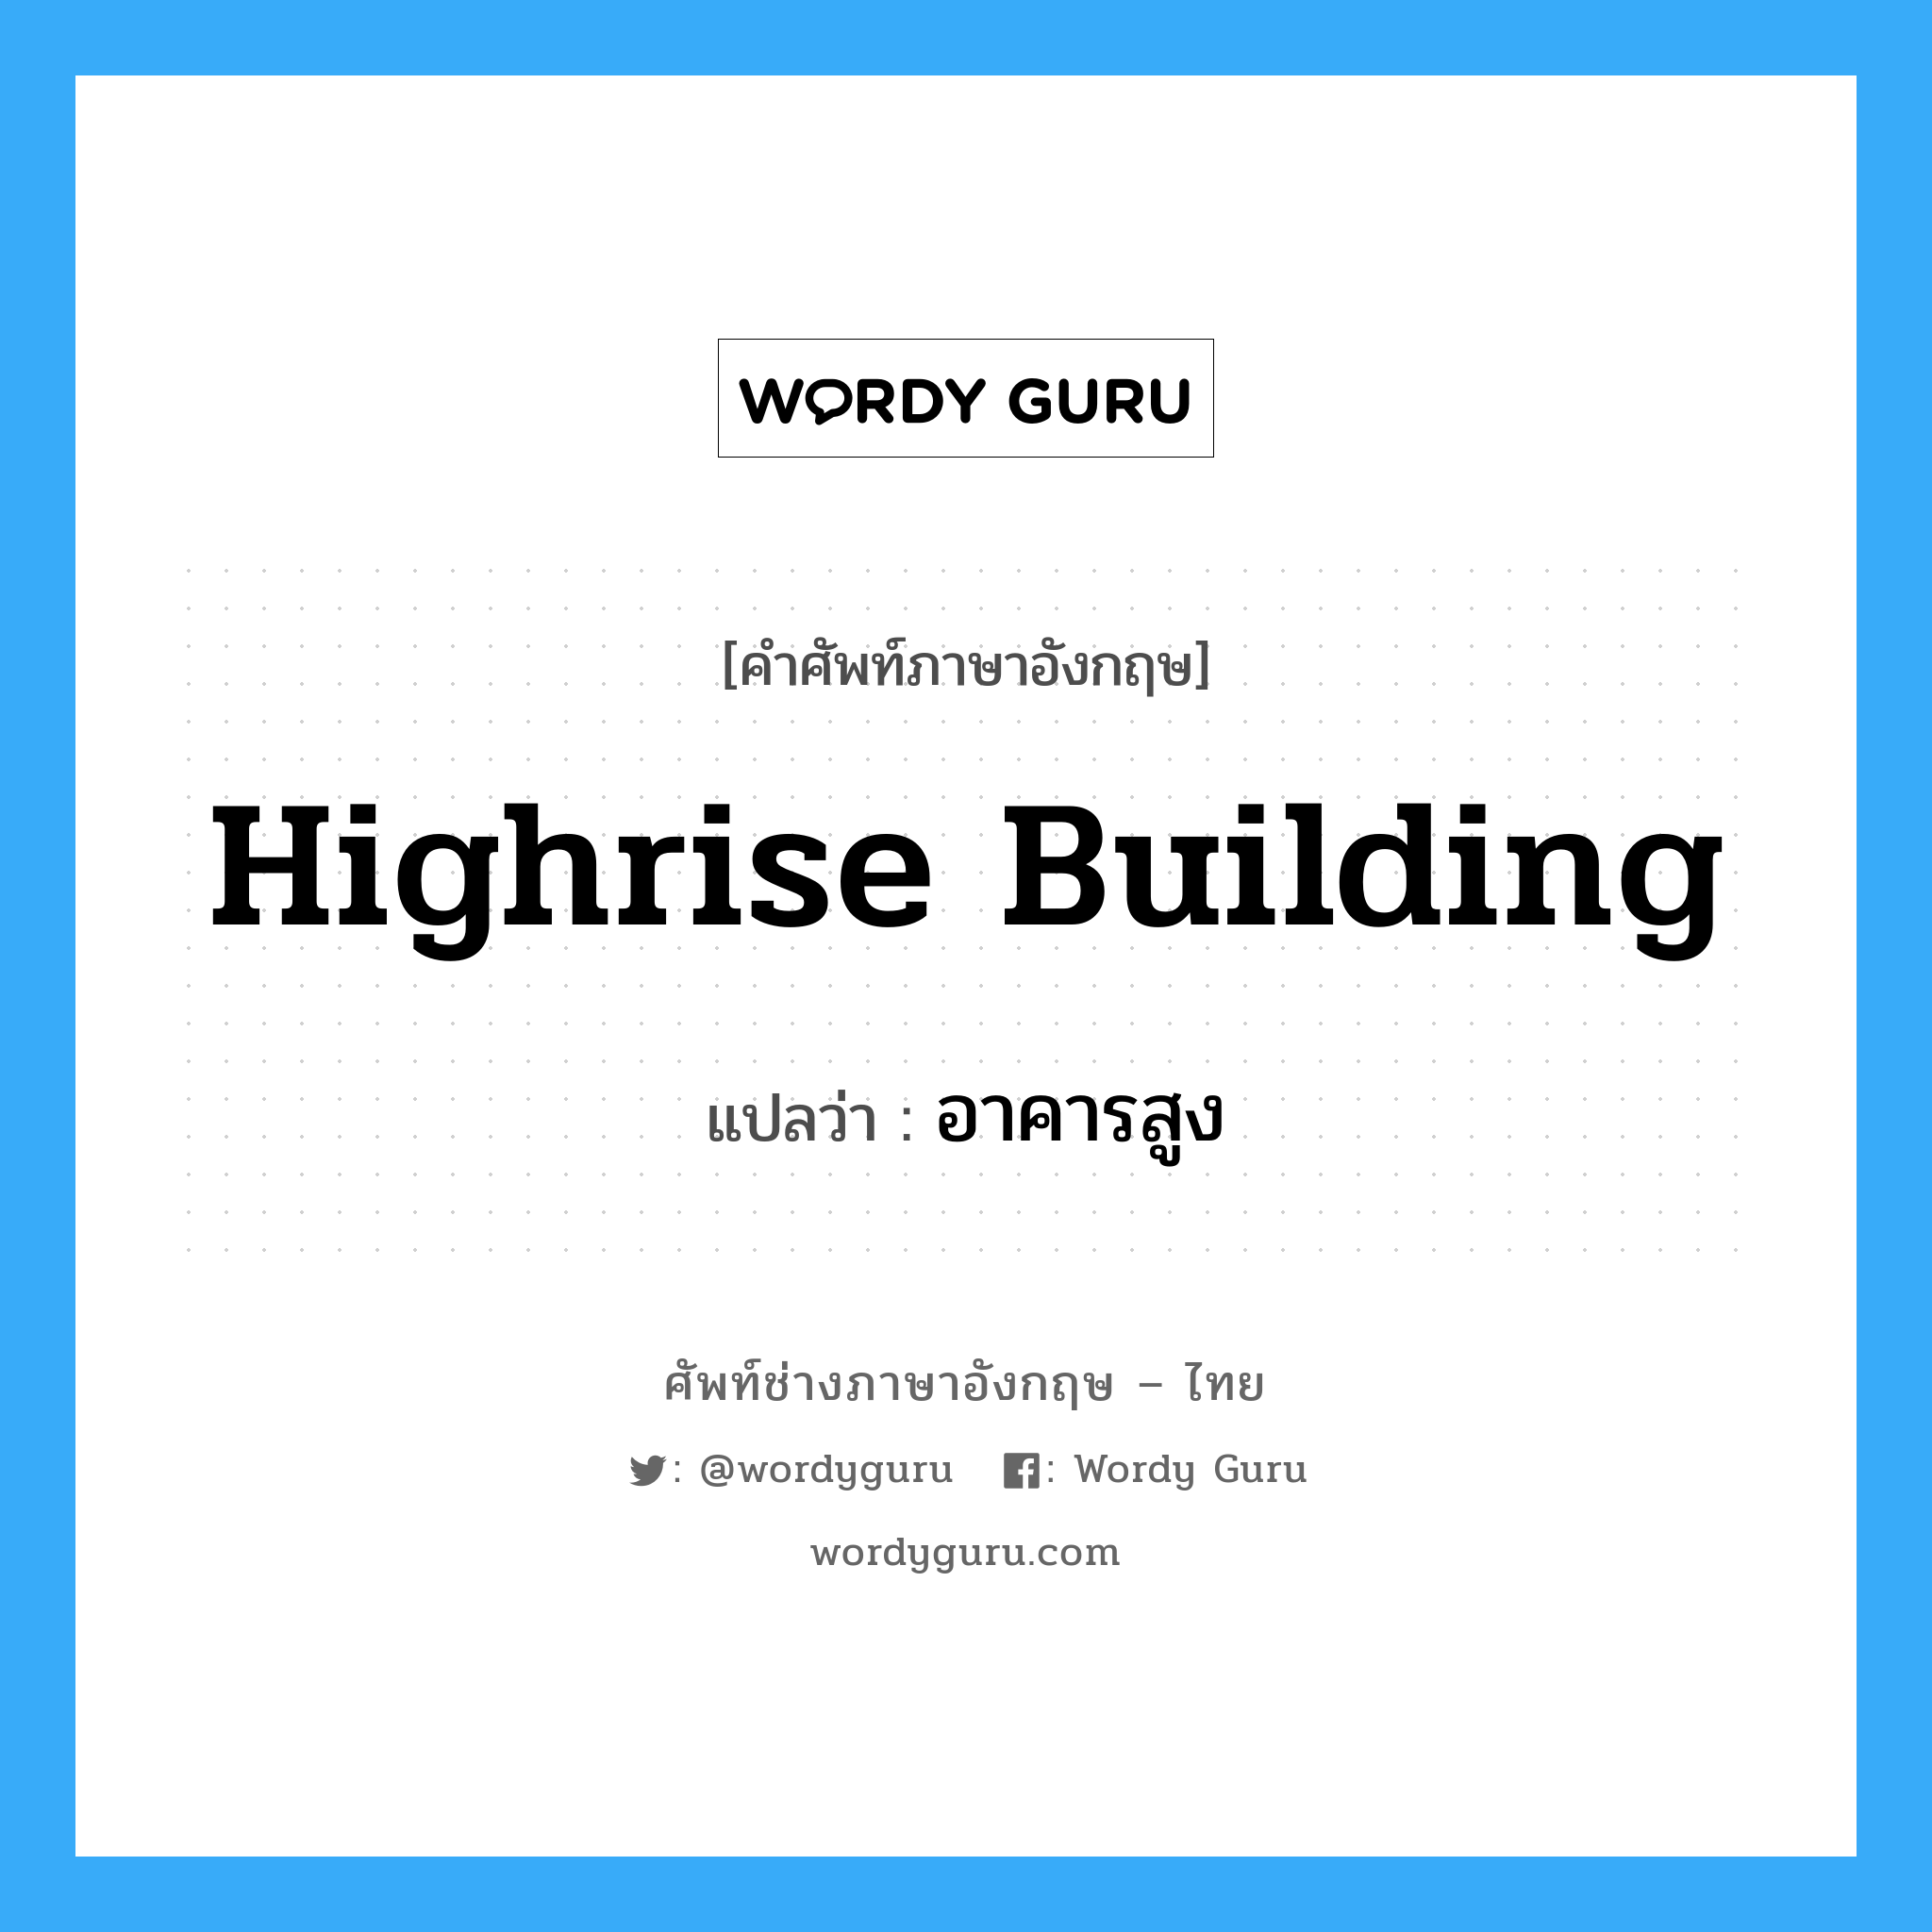 อาคารสูง ภาษาอังกฤษ?, คำศัพท์ช่างภาษาอังกฤษ - ไทย อาคารสูง คำศัพท์ภาษาอังกฤษ อาคารสูง แปลว่า highrise building